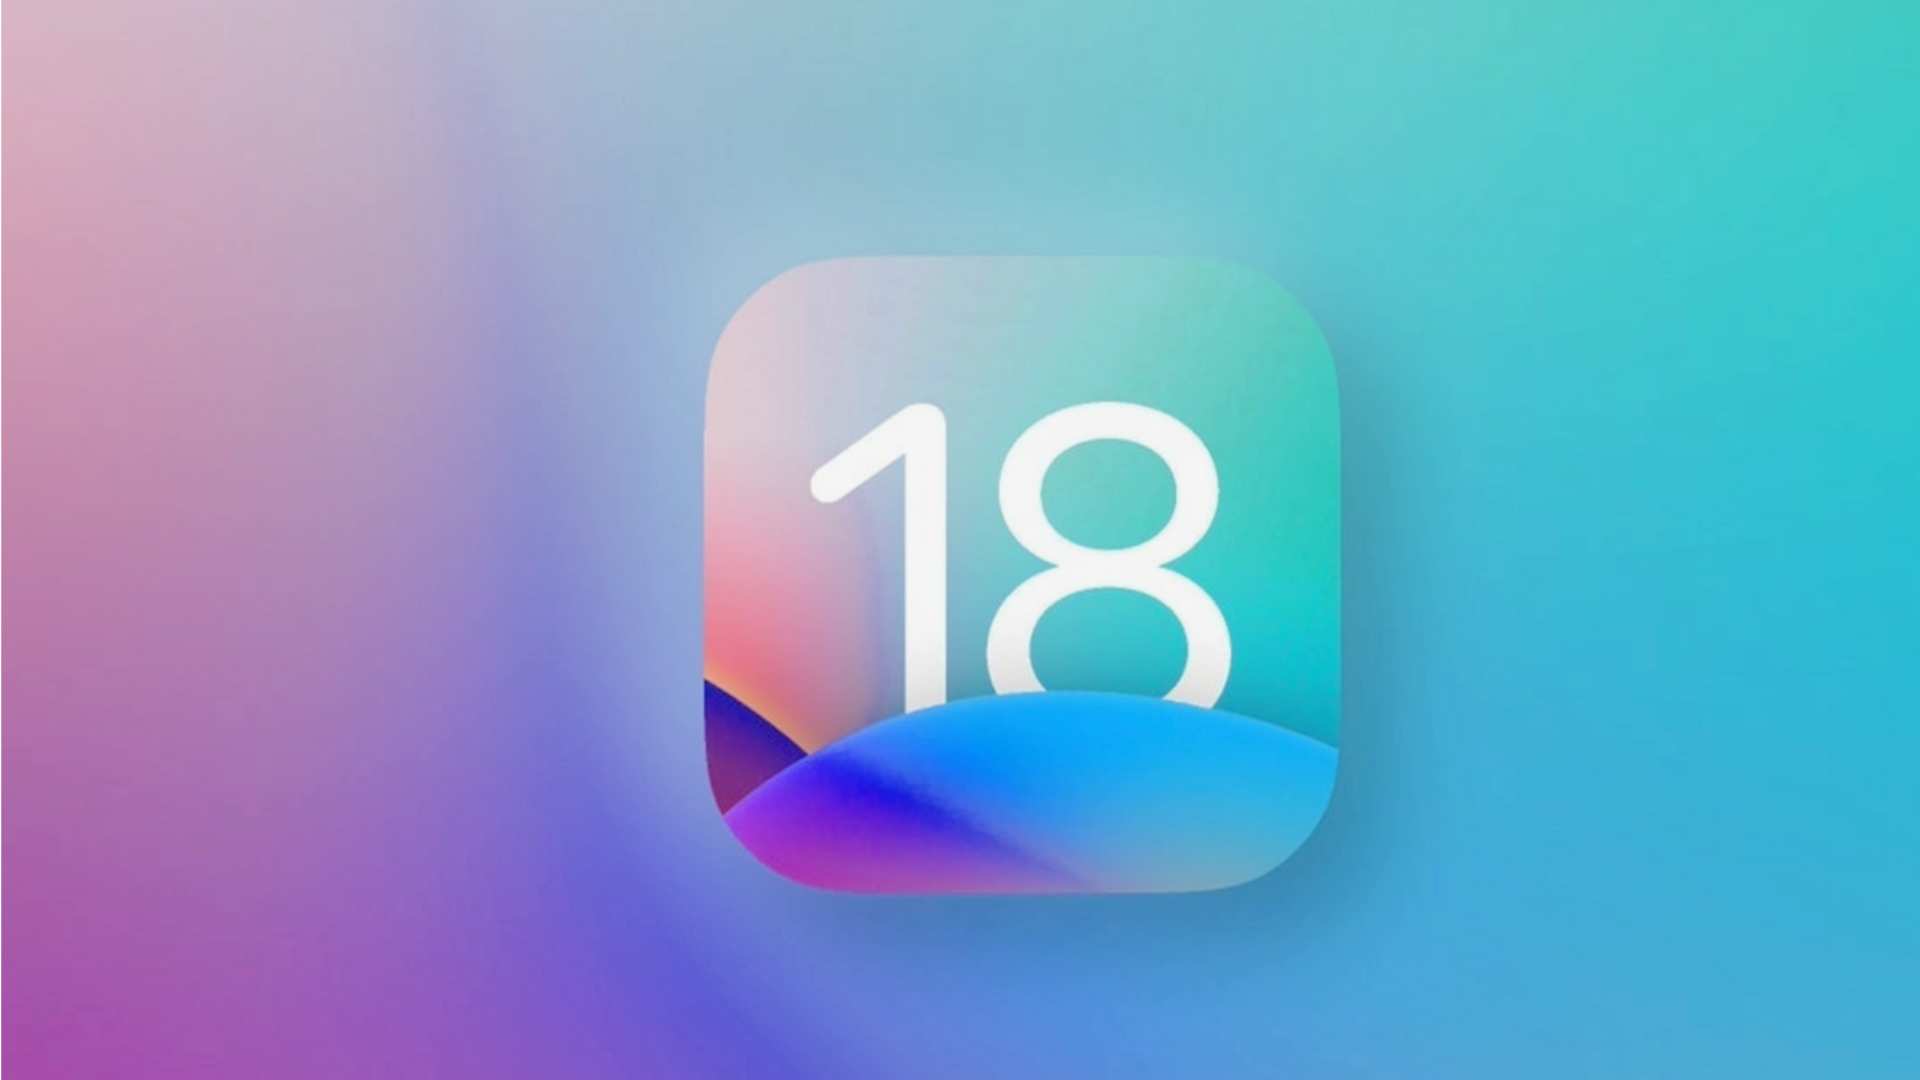 ऐपल की iOS 18 अपडेट में मिलेगी होम स्क्रीन को 'और कस्टमाइज' करने की सुविधा